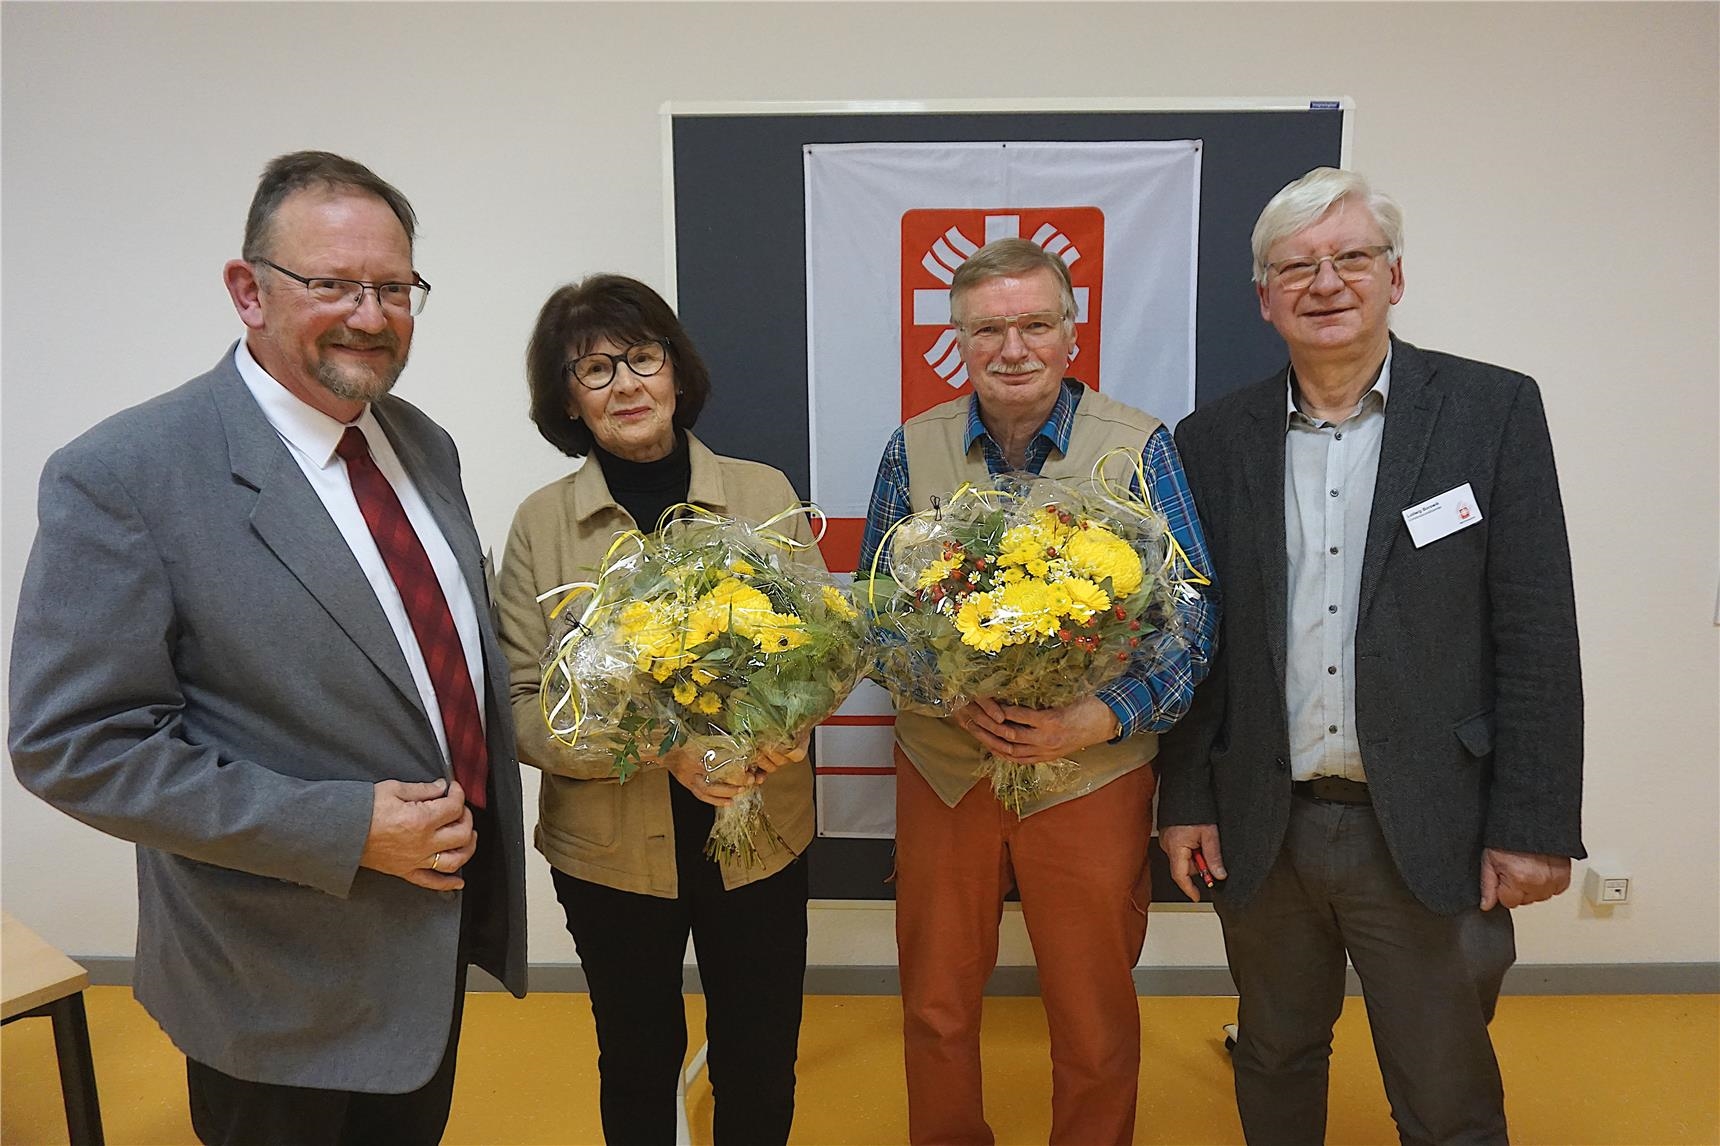 Geschäftsführer und Vorsitzender bedanken sich mit Blumen bei ausscheidenden Vorstandsmitgliedern. (Jutta Link)